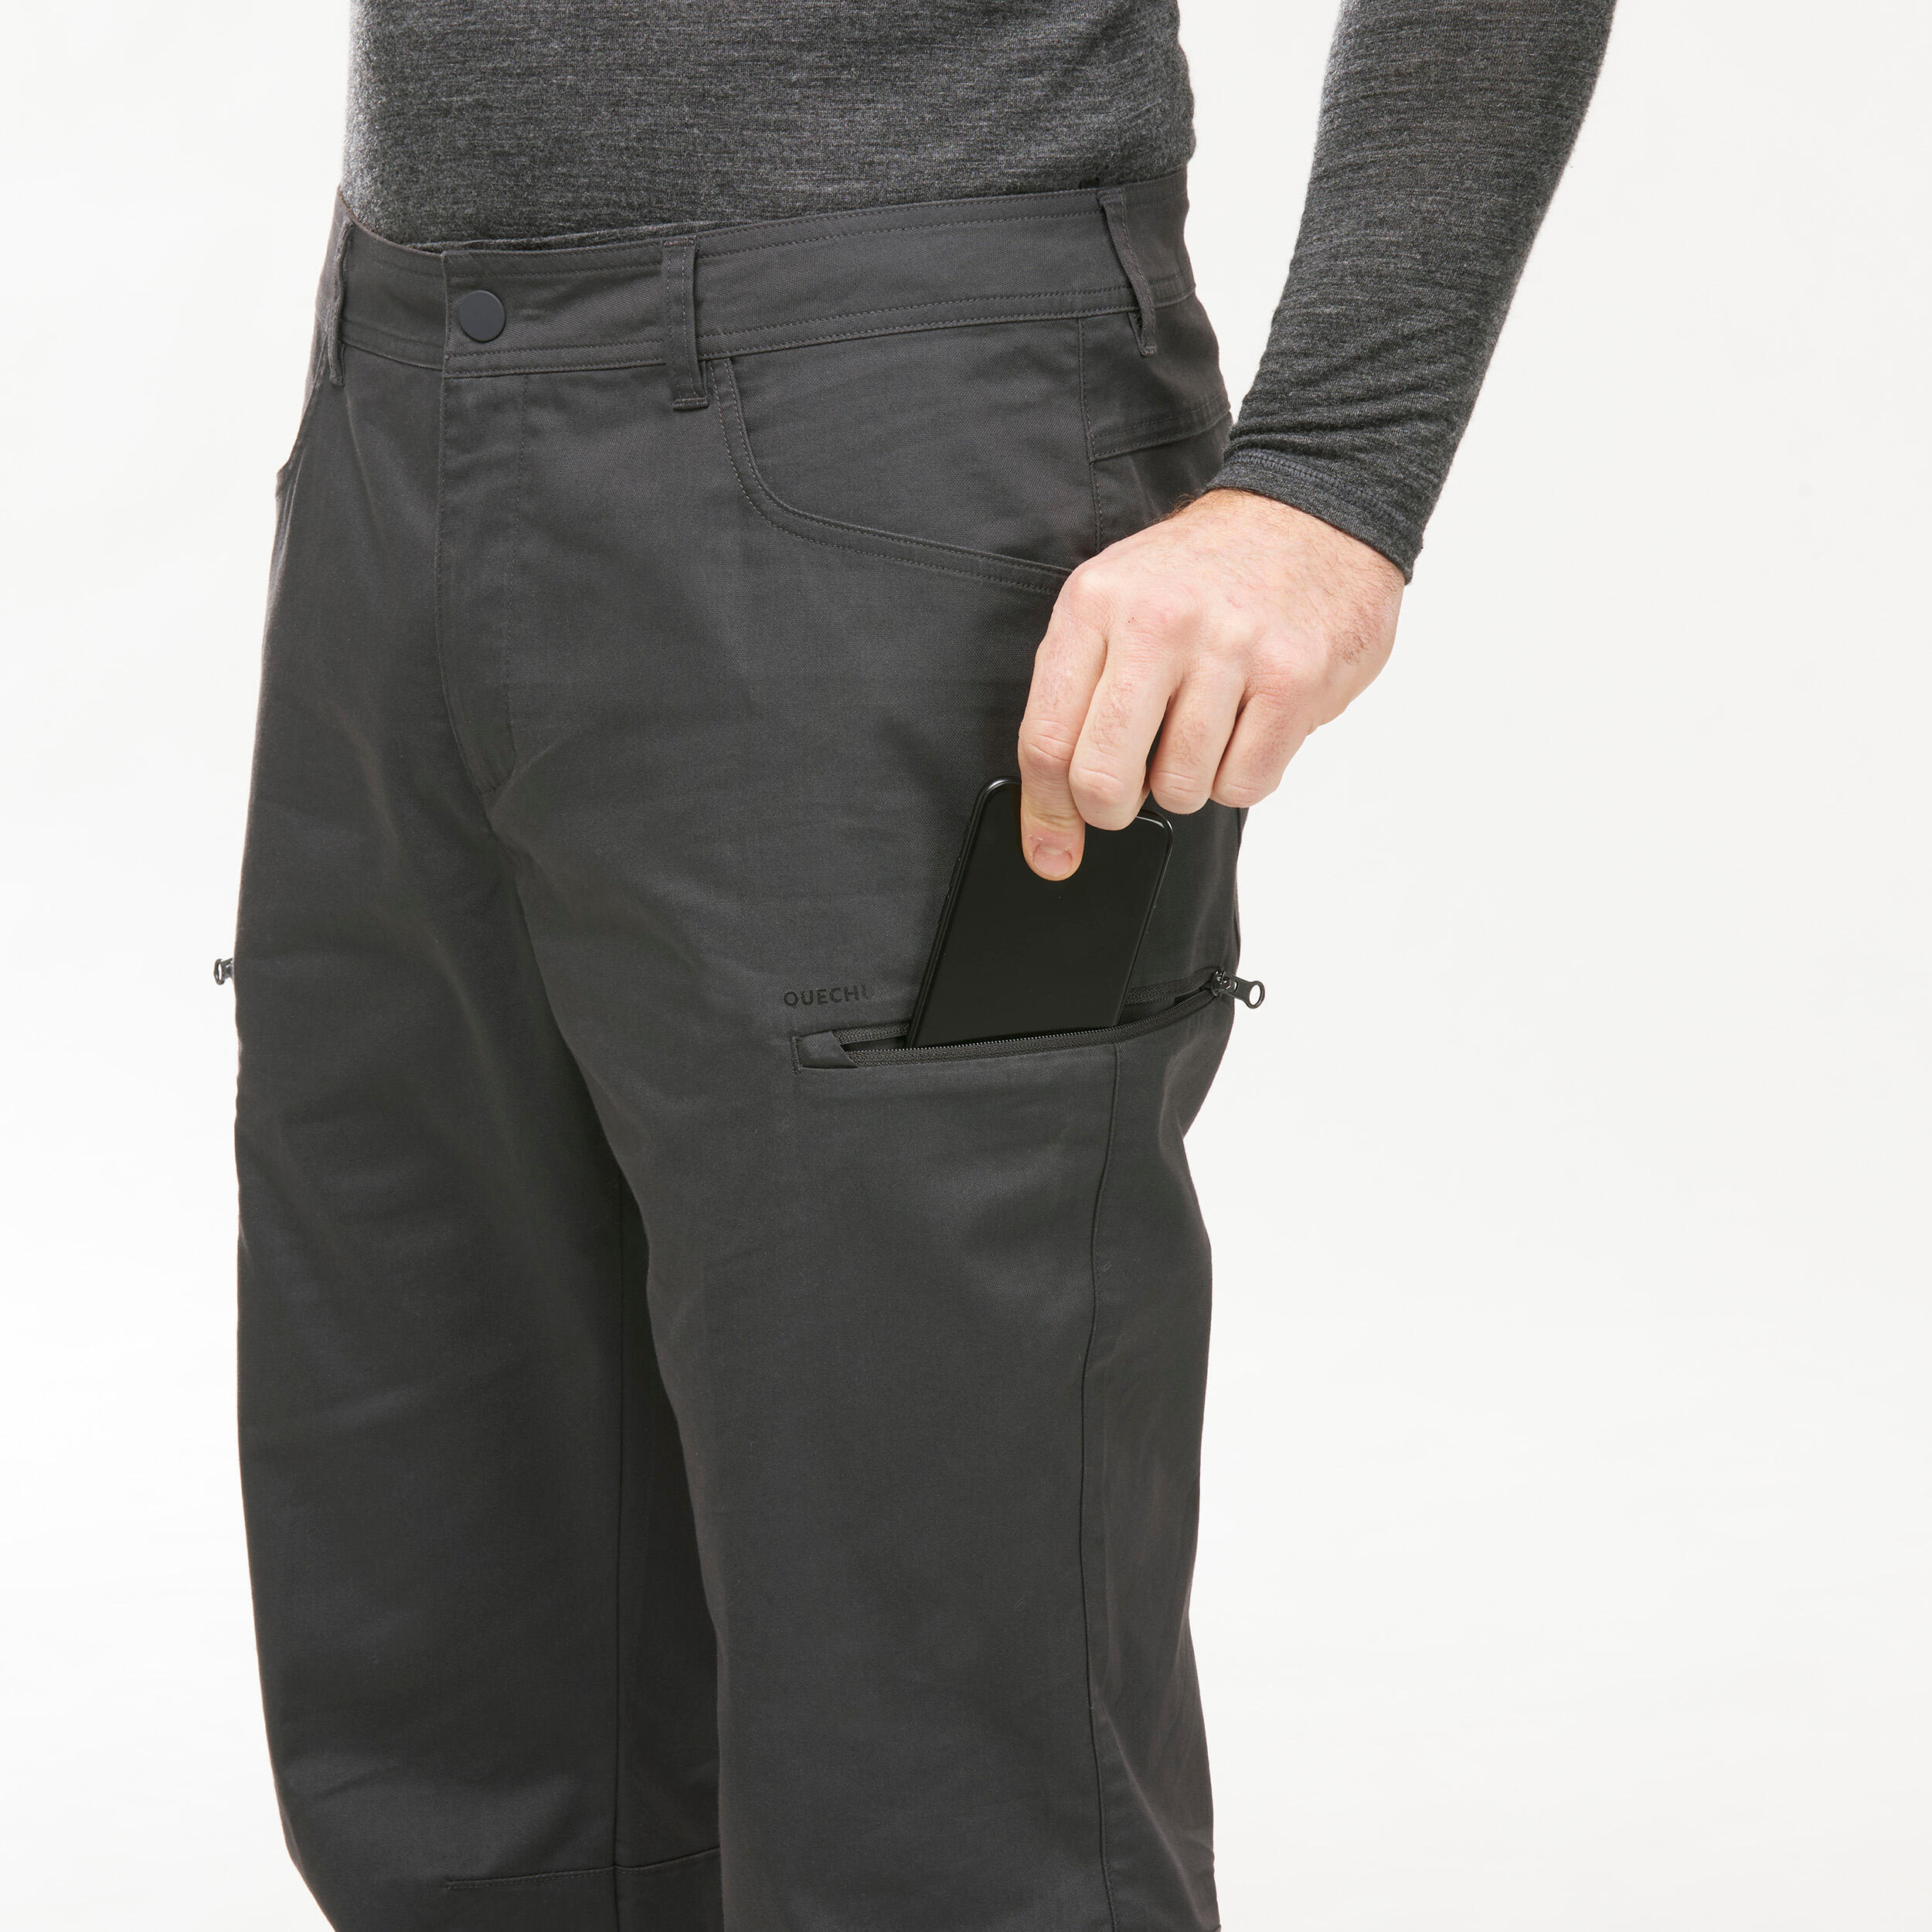 Men's NH500 Regular off-road hiking trousers 10/11